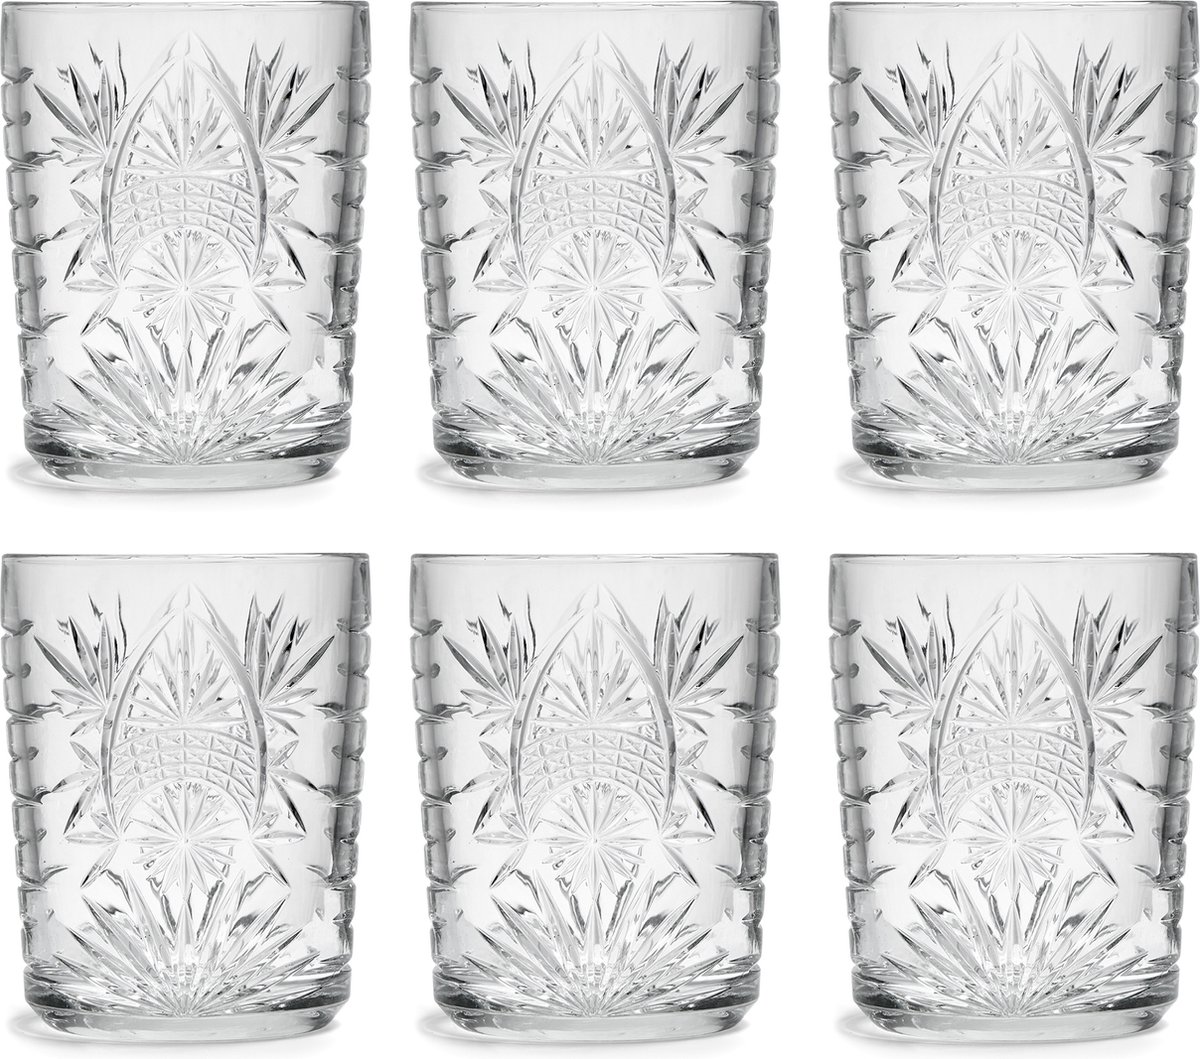 Libbey Drinkglas Atik - 350 ml / 35 cl - 6 Stuks - Vaatwasserbestendig - Vintage design - Hoge kwaliteit - Libbey